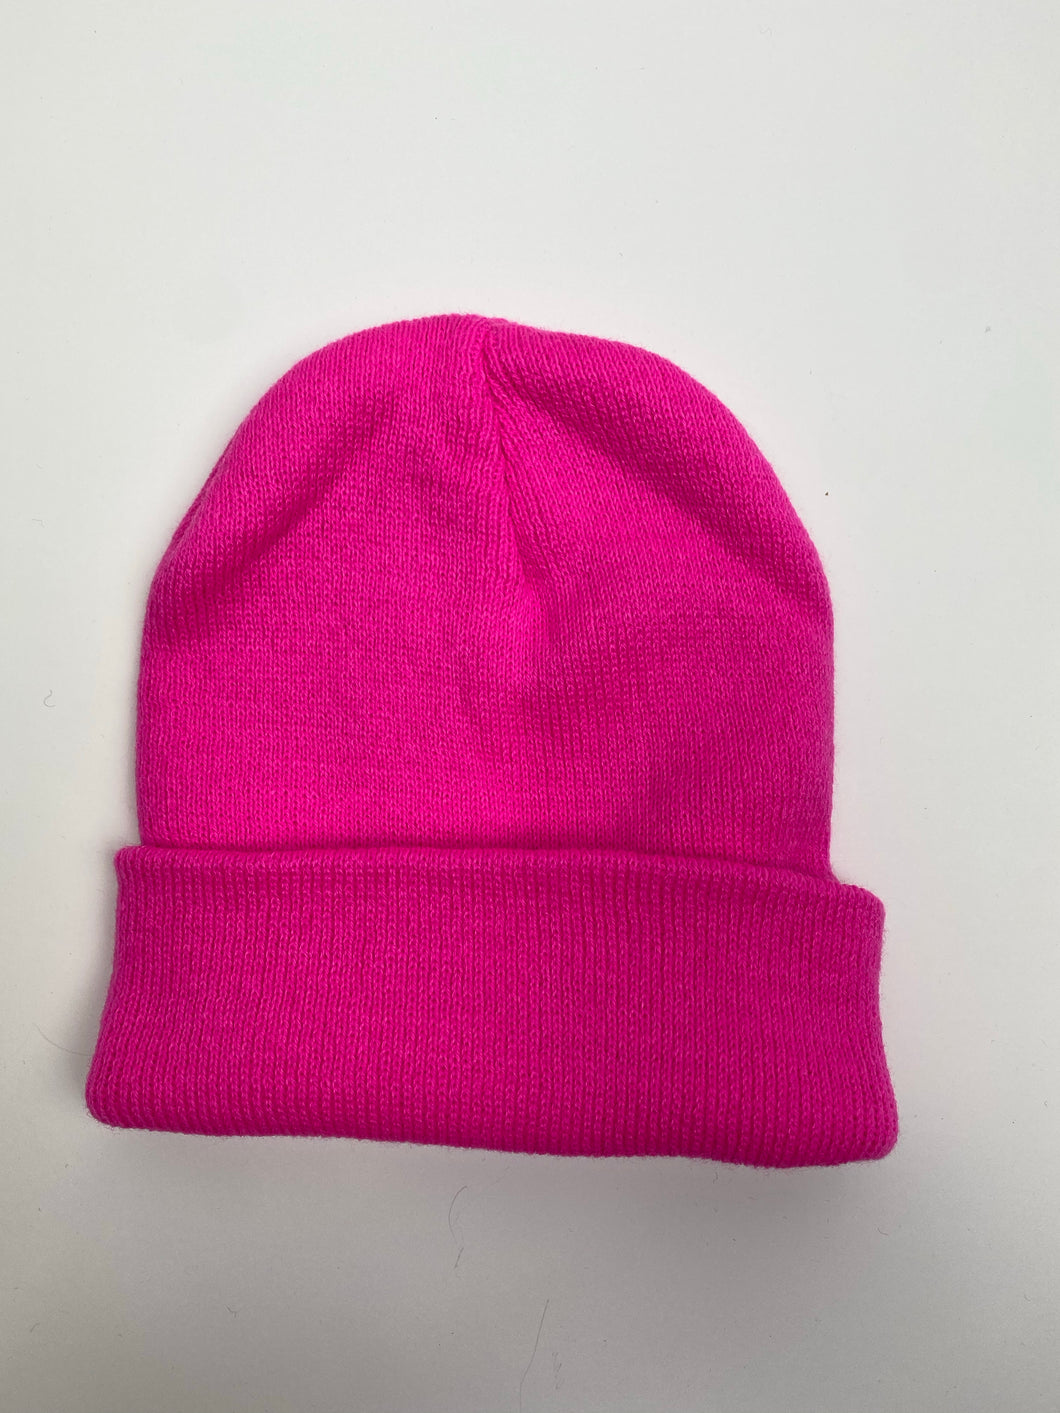 Hot Pink Beanie Hat